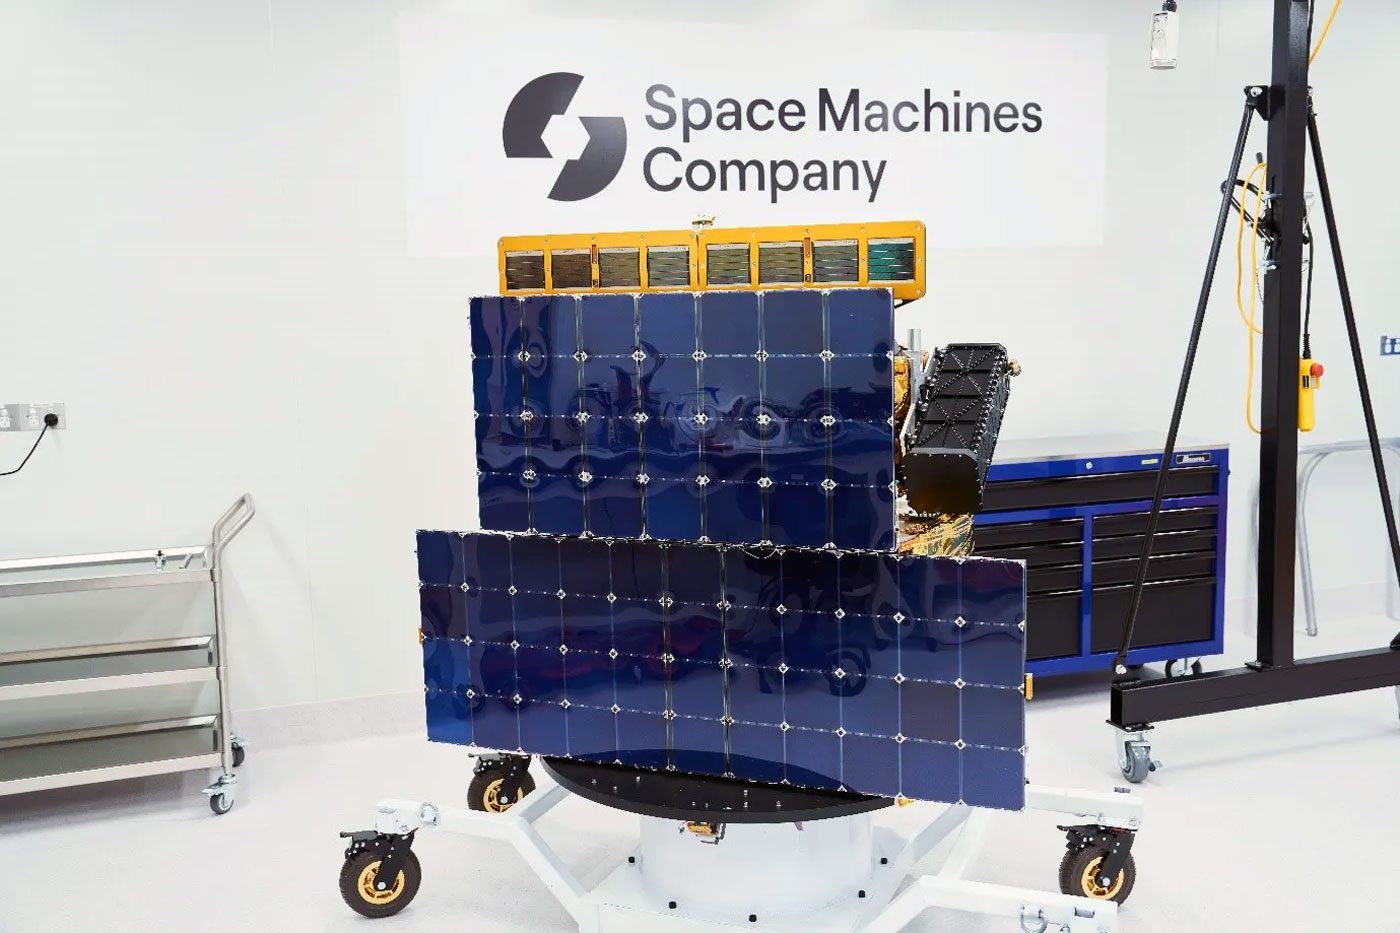 CSIRO Uzay Güneş Paneli Teknolojisi Avustralya'nın Esnek Güneş Panelleri Optimus-1 Uzay Güneş Enerjisi